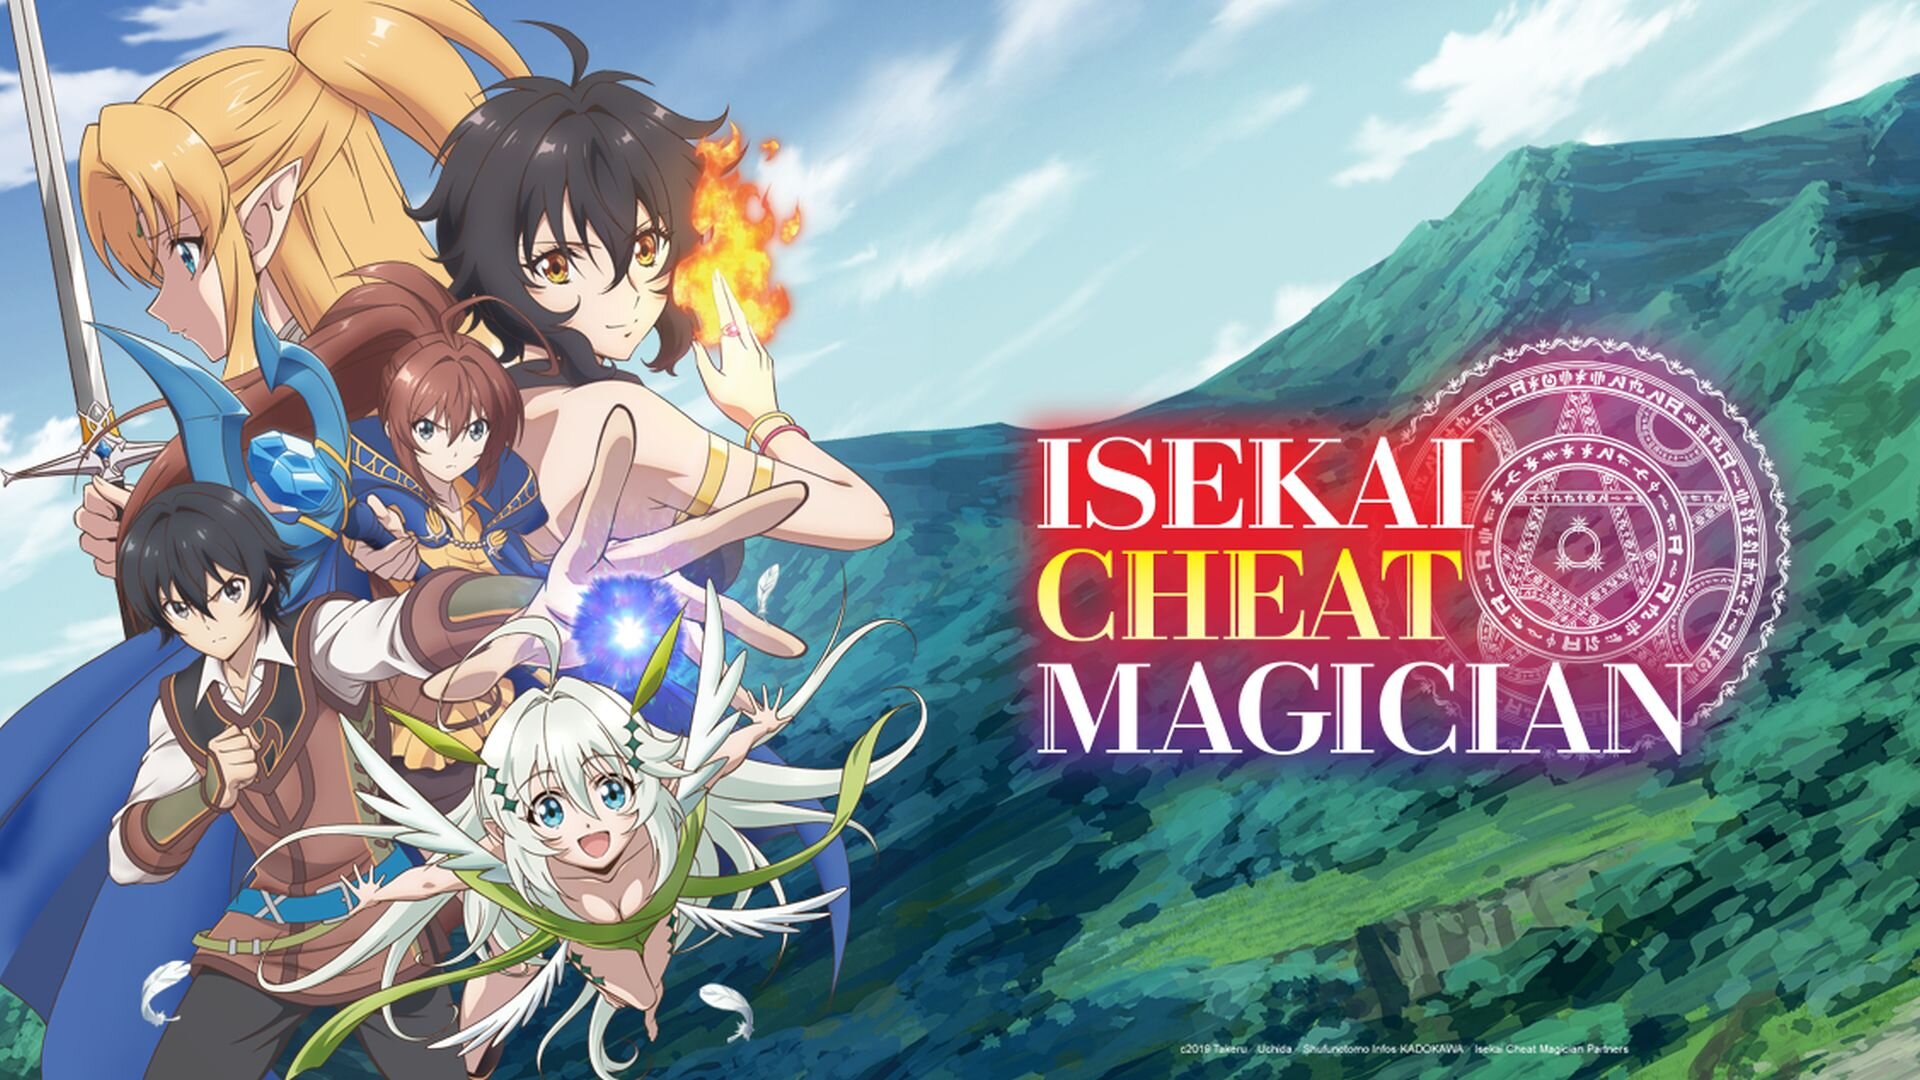 Watch Isekai Cheat Magician - Crunchyroll